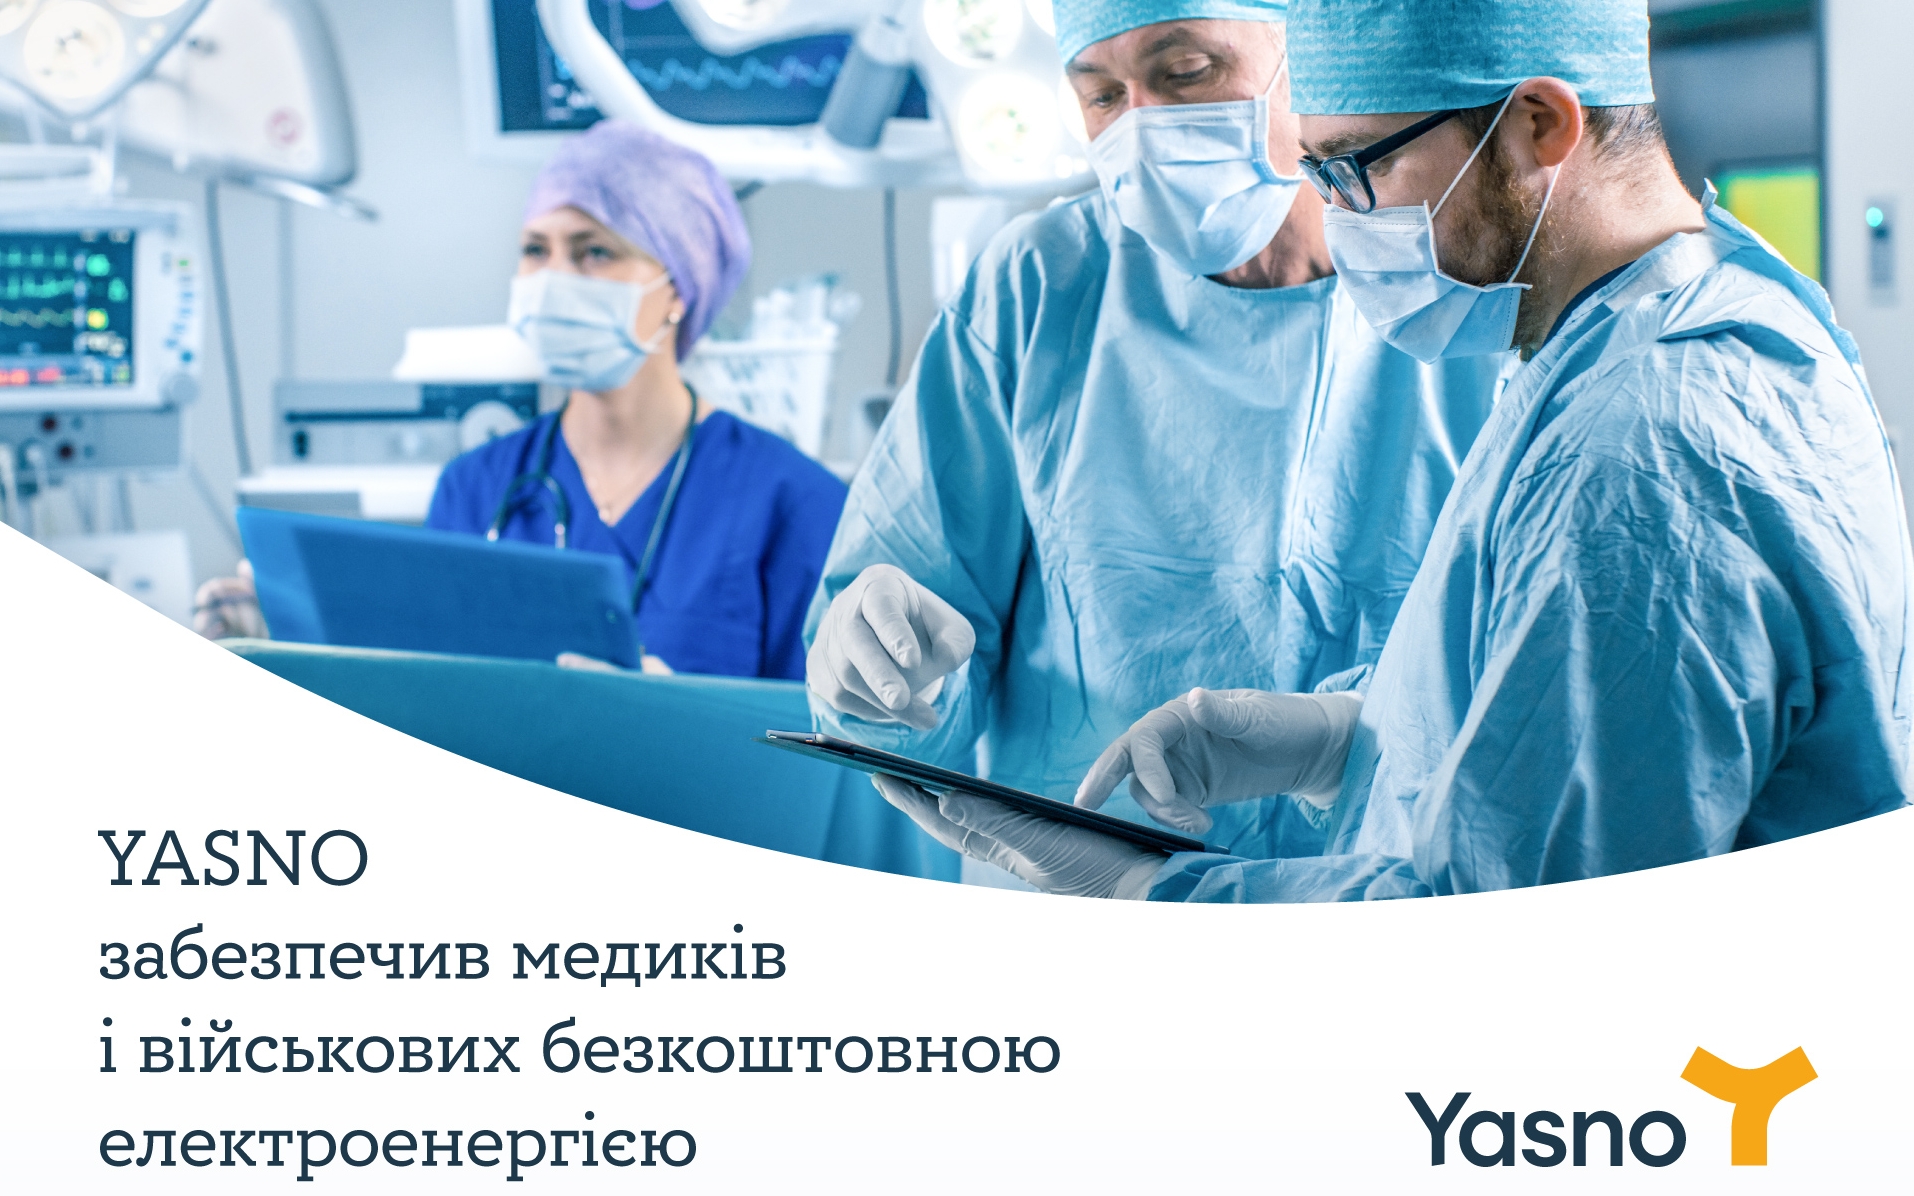 Військові та медики отримали безкоштовну електроенергію від YASNO